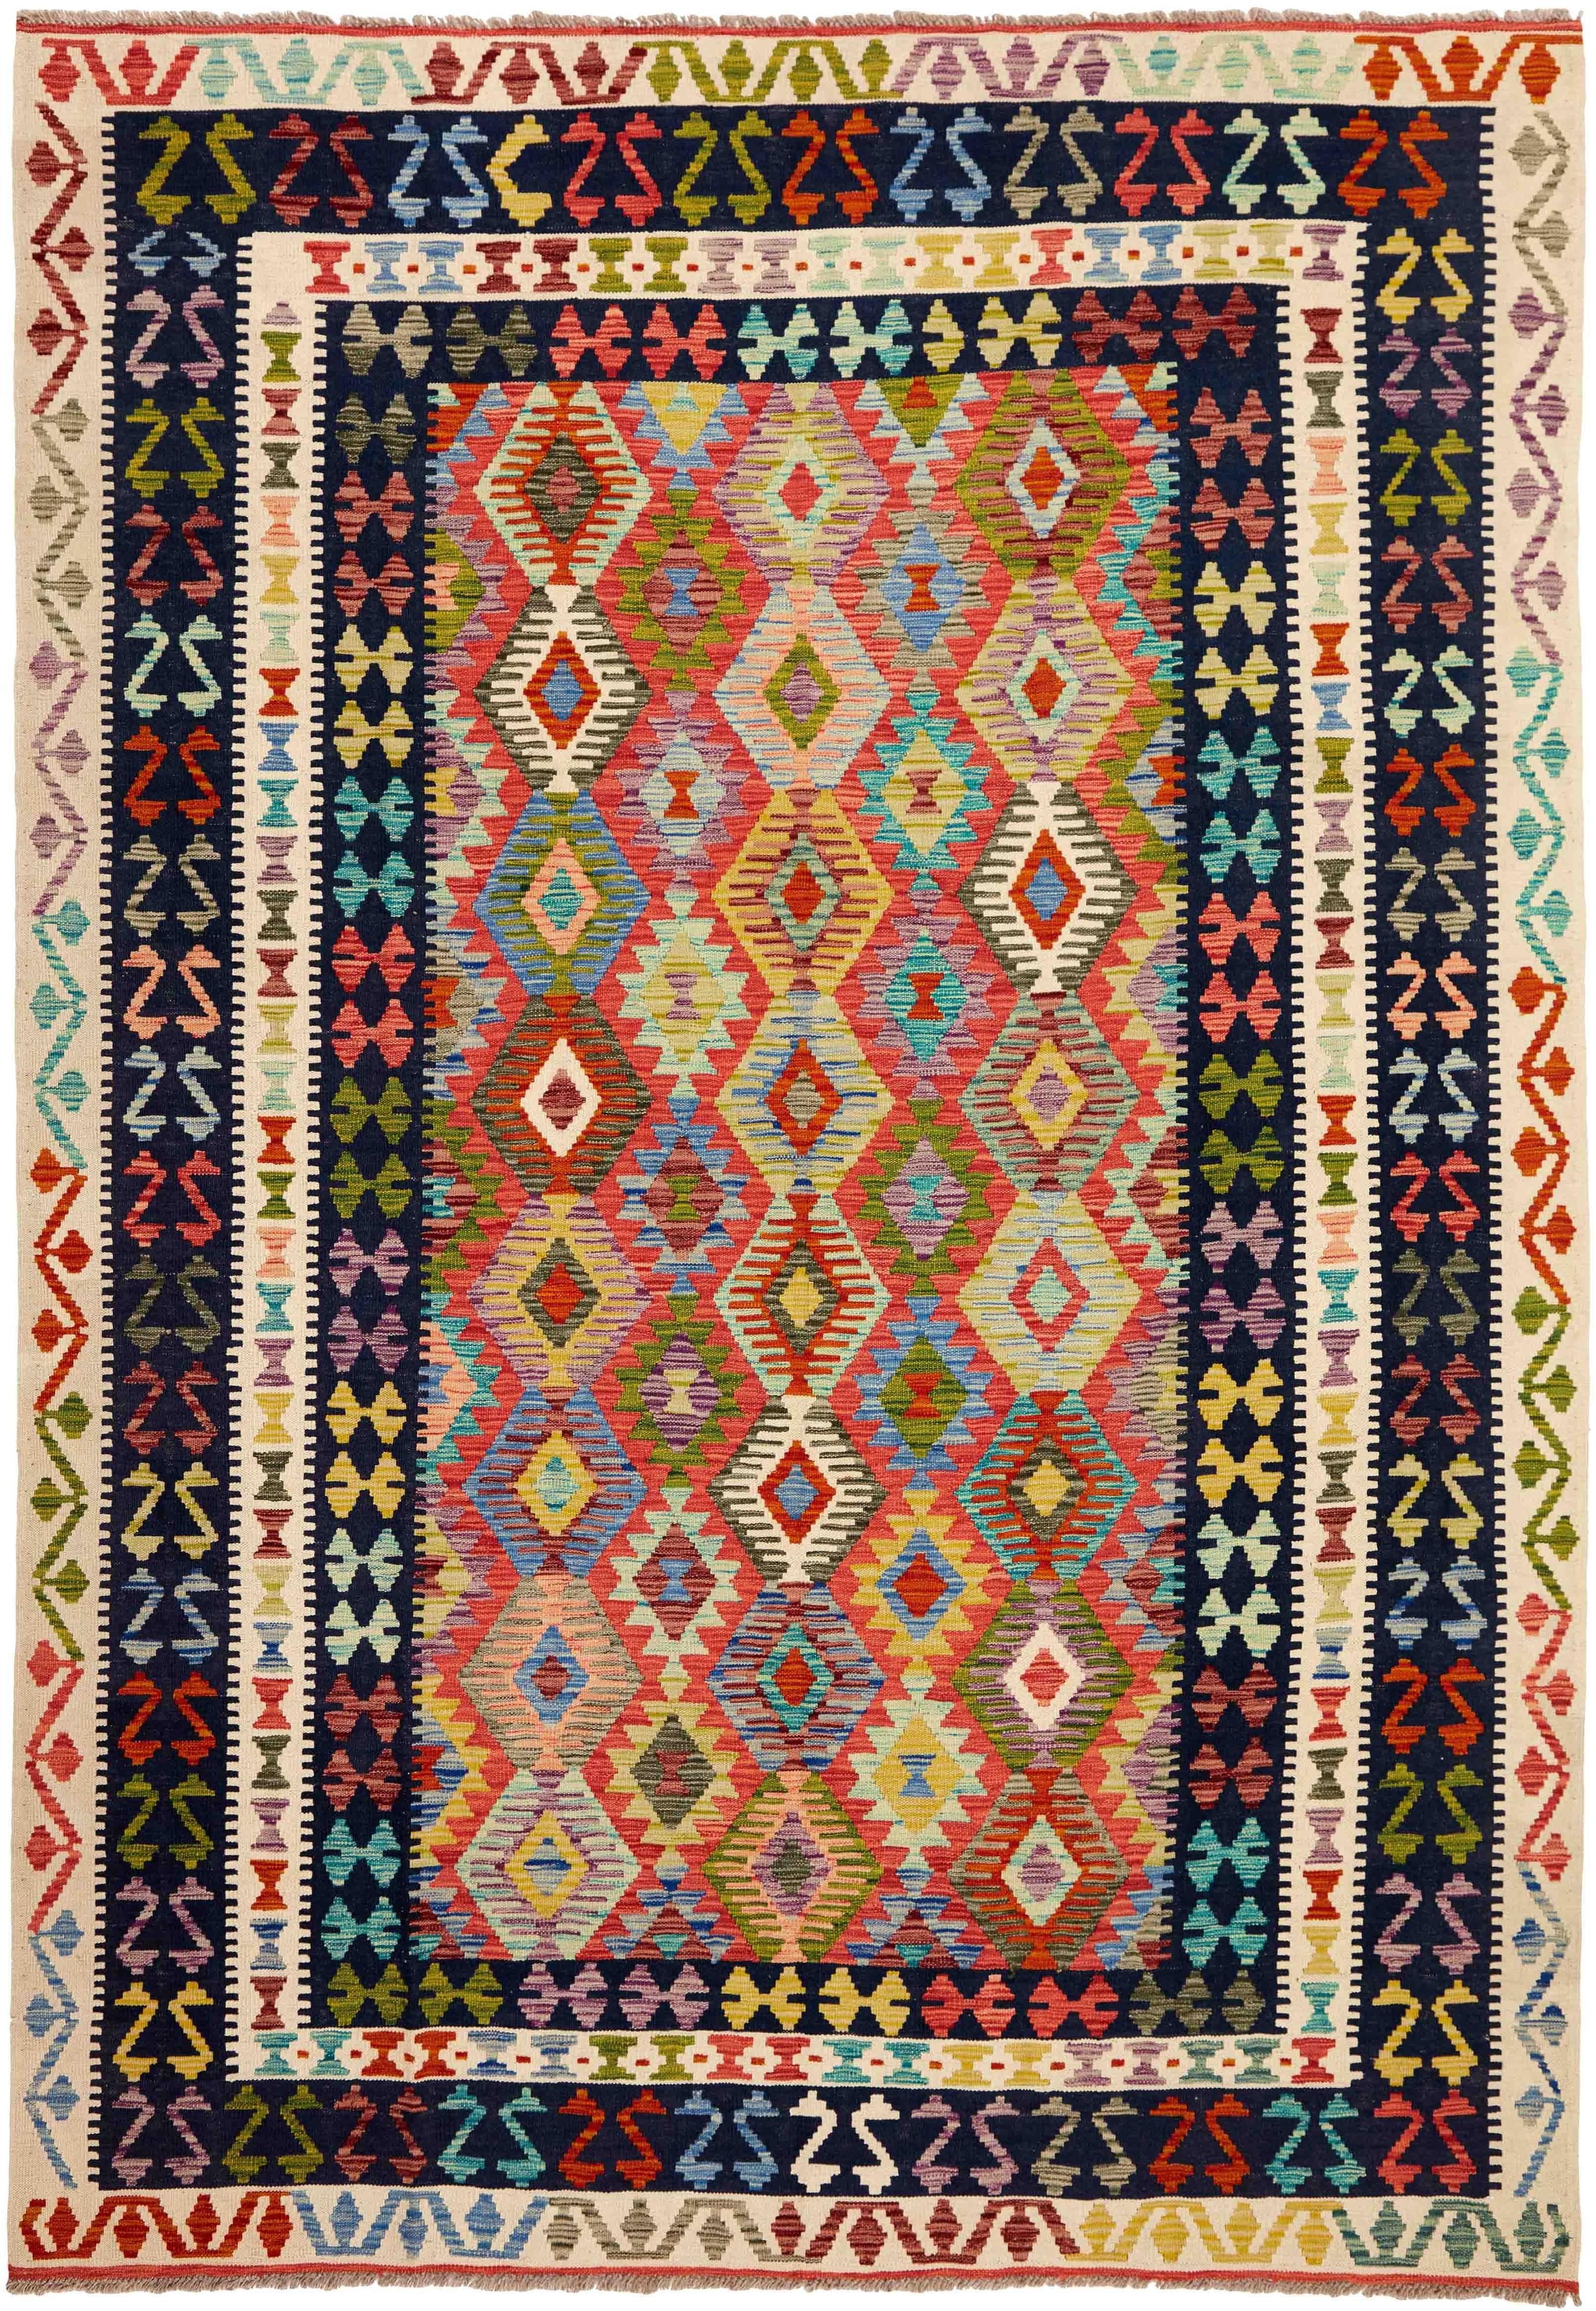 Oriental kelim flatweave rug with a geometric design in red, pink, orange, yellow, blue, green, purple, beige, brown and black